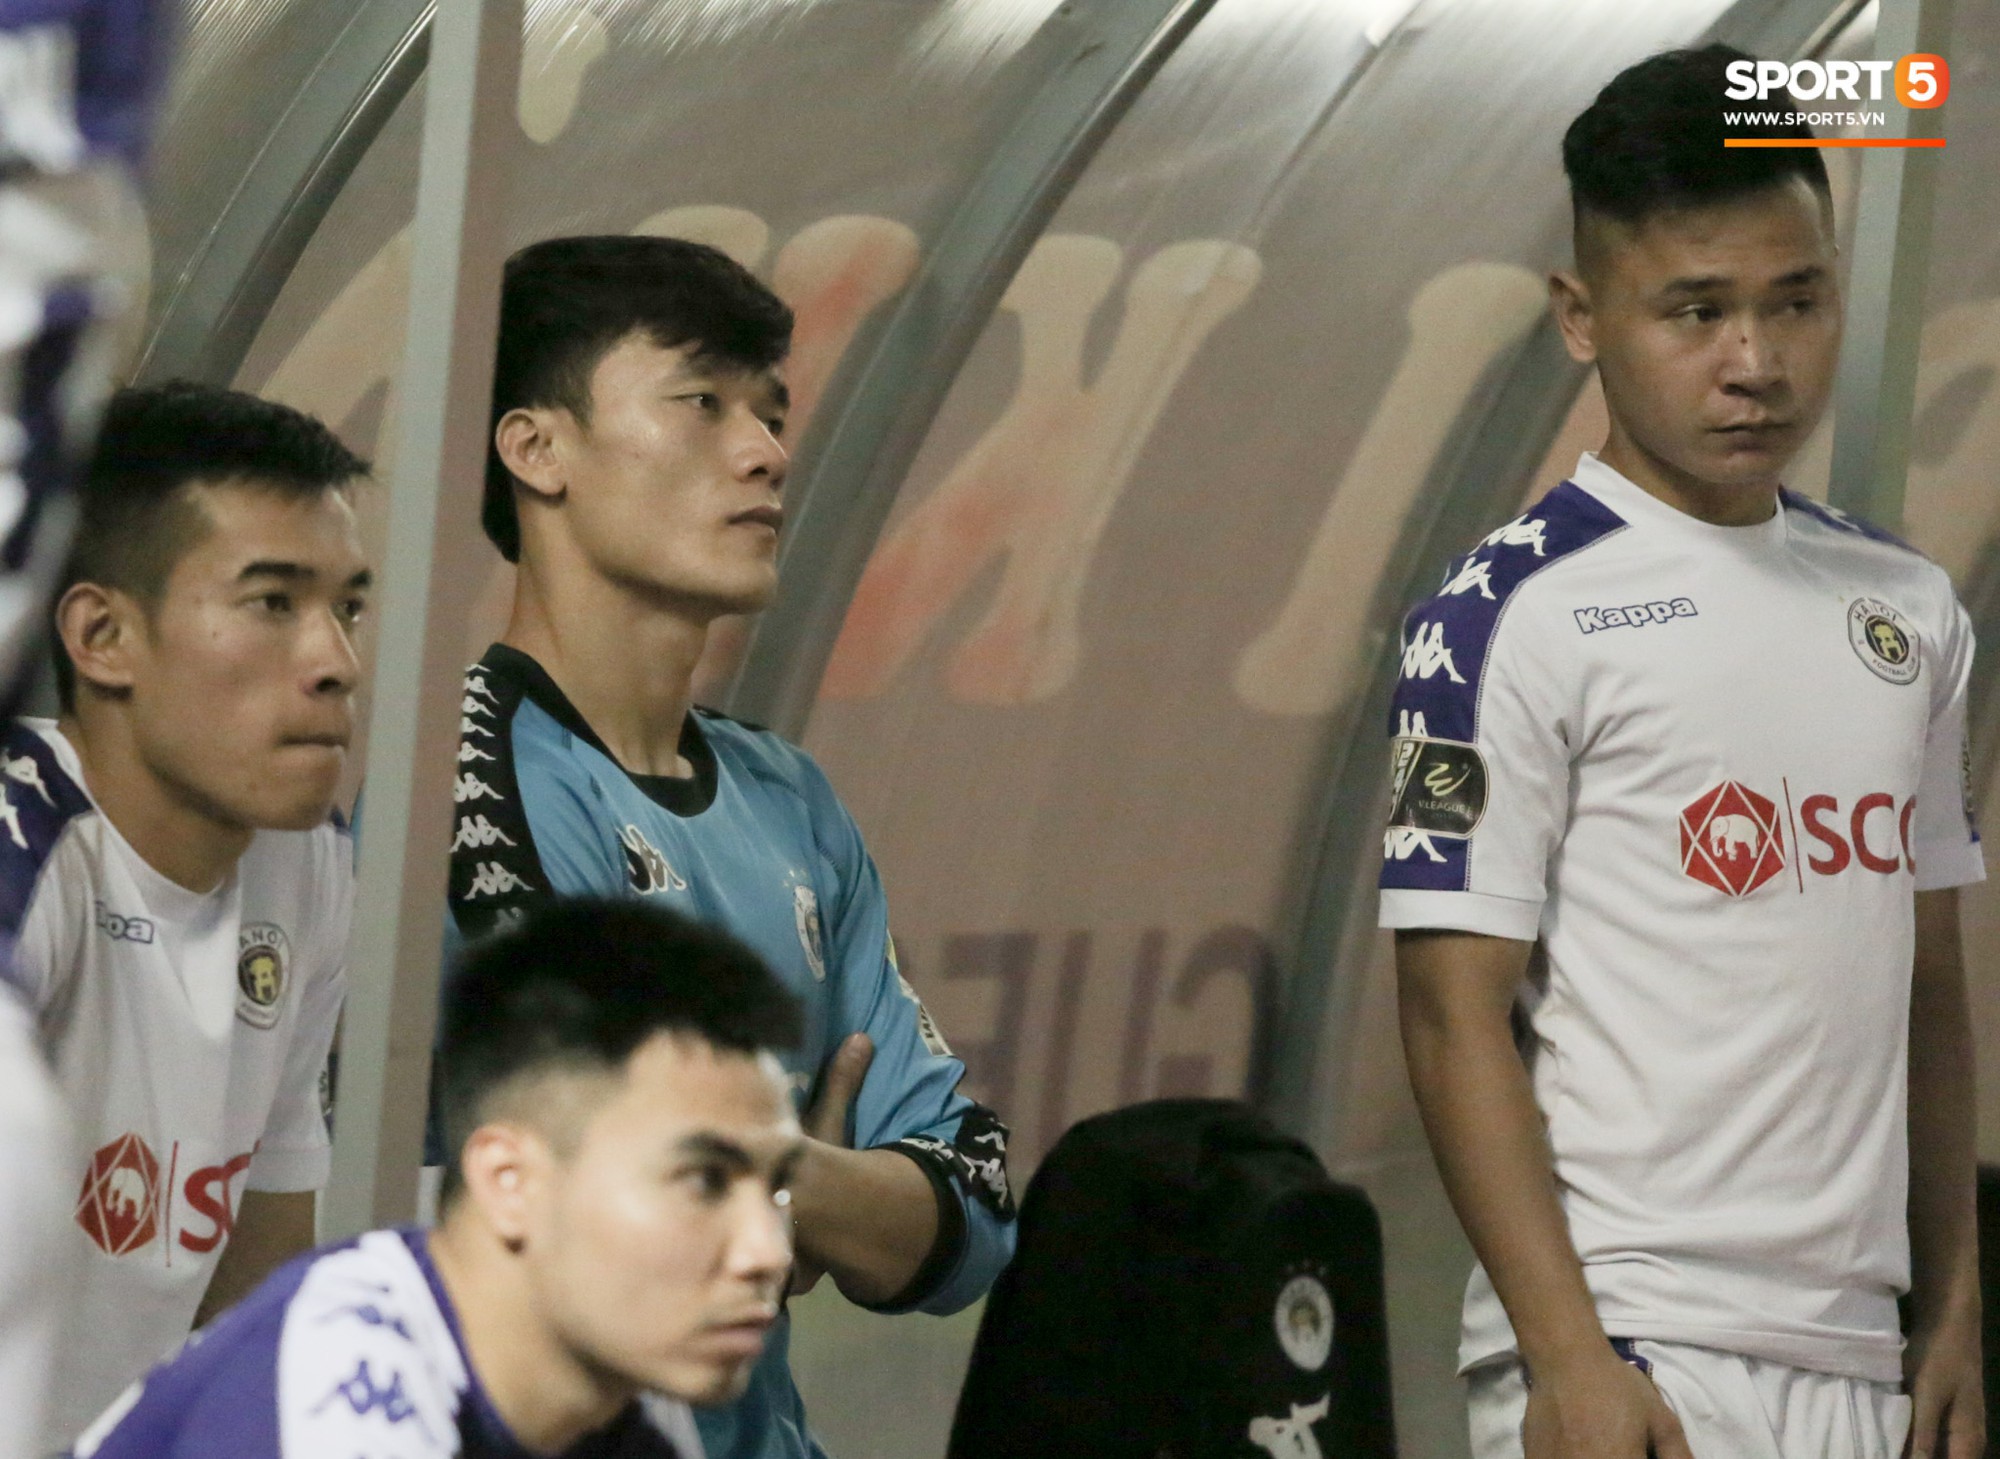 Bùi Tiến Dũng chán nản, không khí Hà Nội FC ảm đạm vì thua thảm trước CLB Thanh Hoá - Ảnh 1.